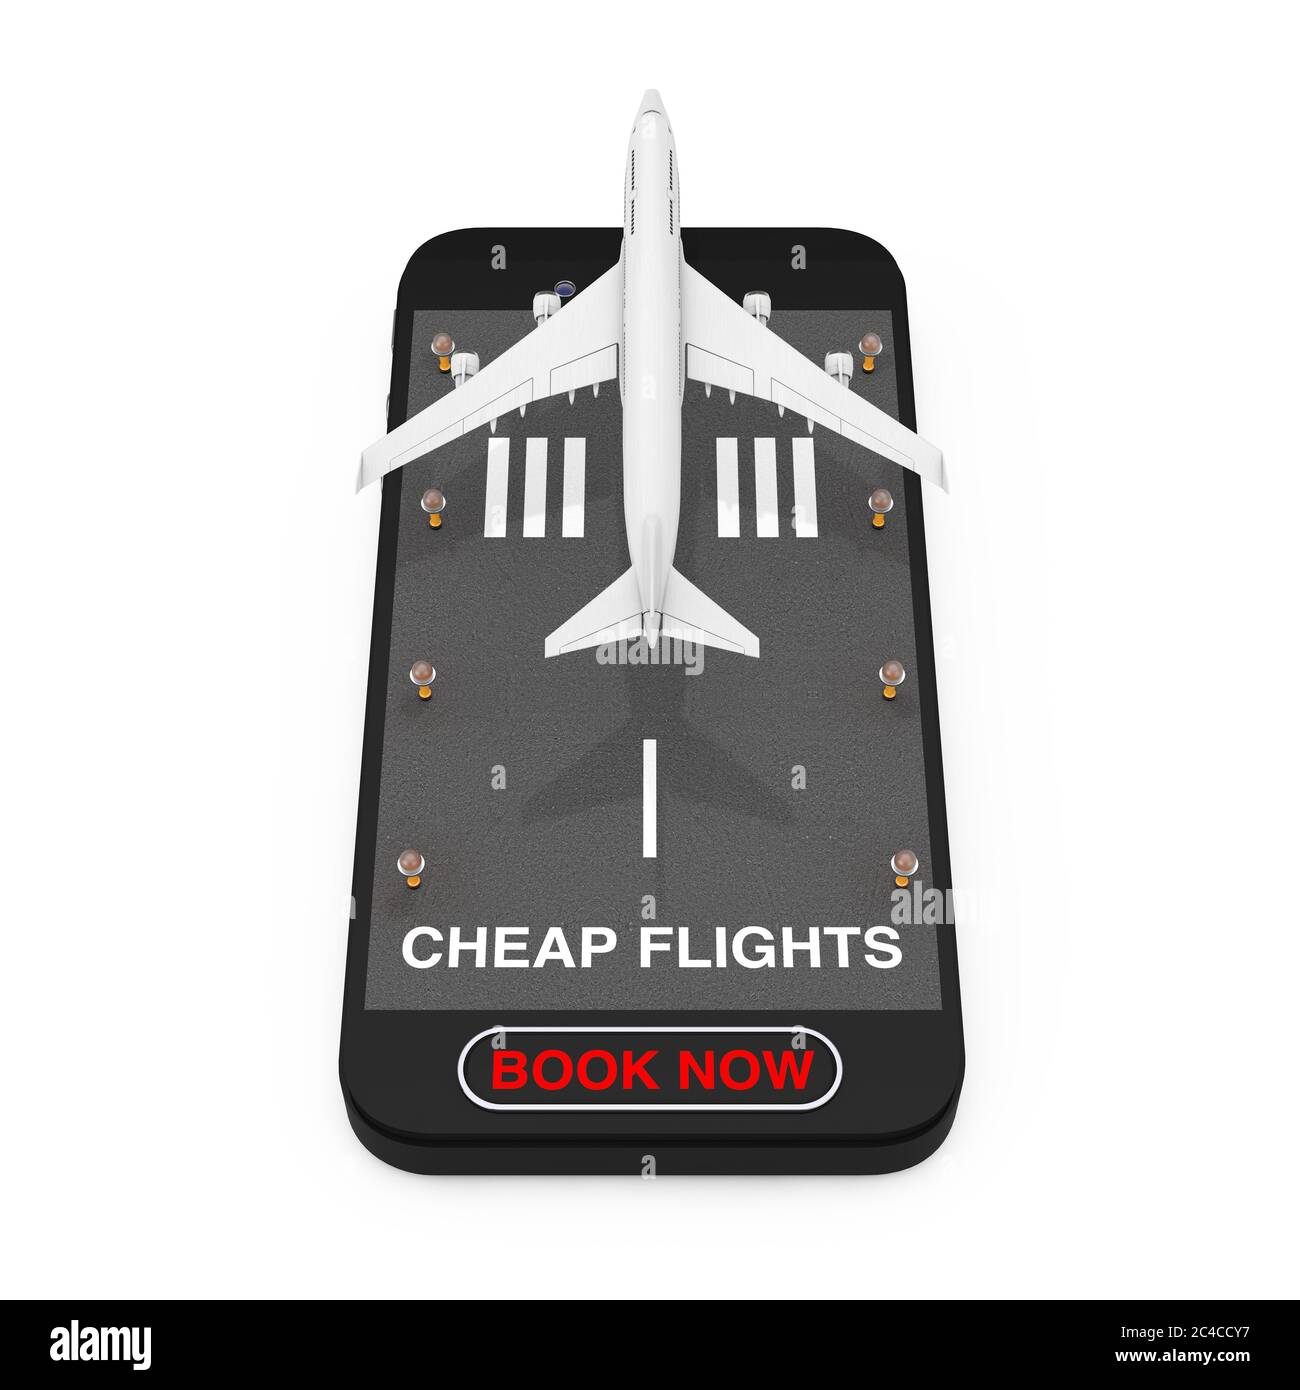 White Jet passager avion décollage de téléphone mobile avec piste, vols bon marché signer et réserver maintenant bouton sur fond blanc. Rendu 3d Banque D'Images